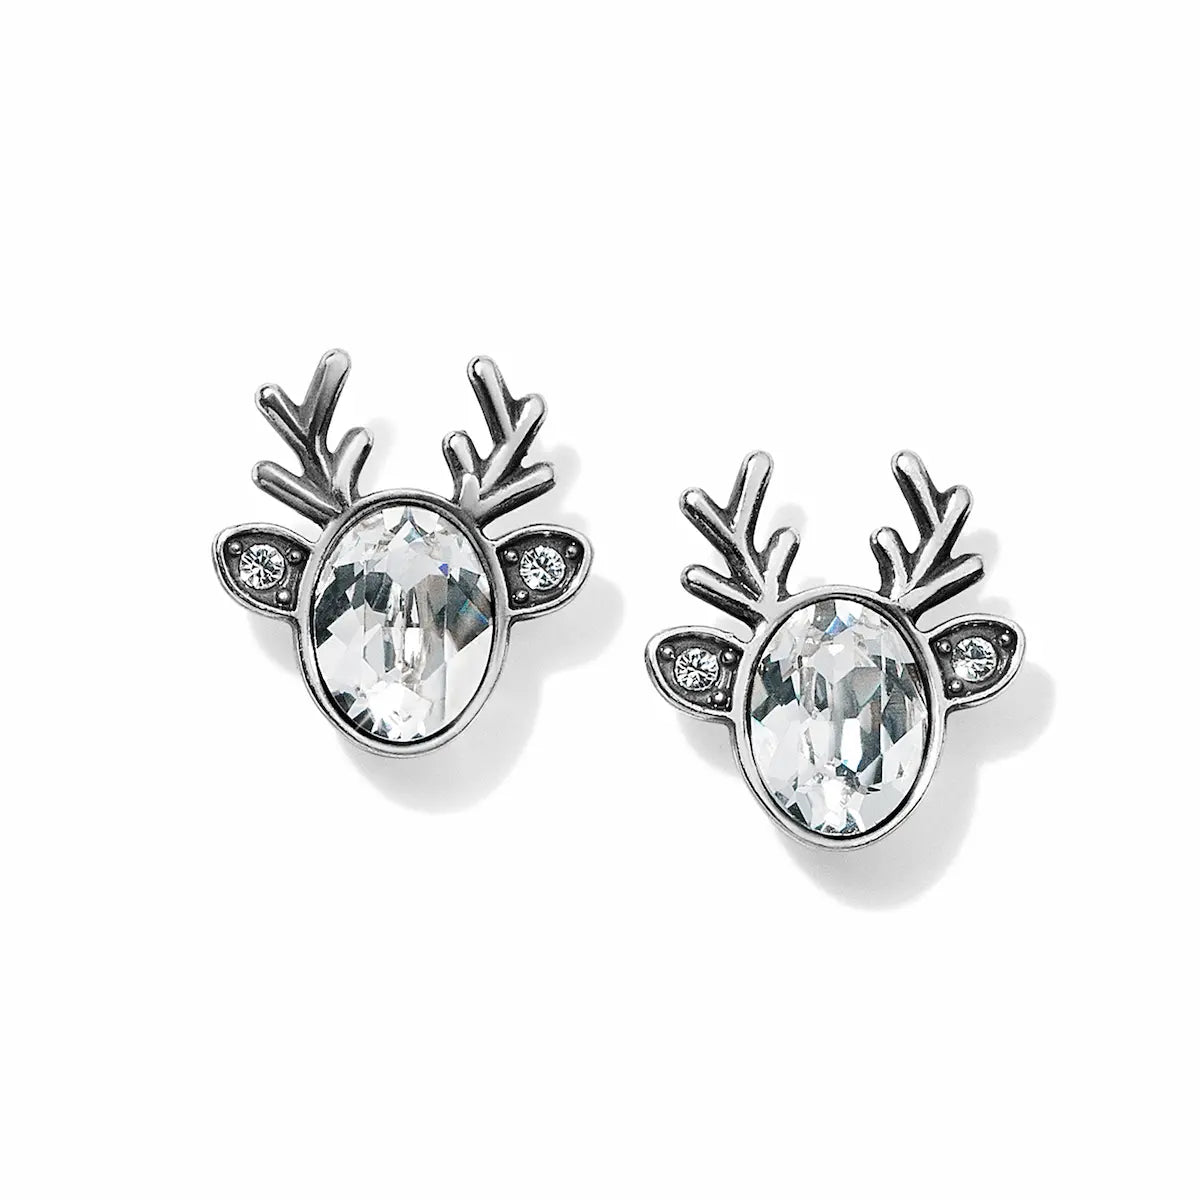 Reindeer Glitz Mini Post Earrings